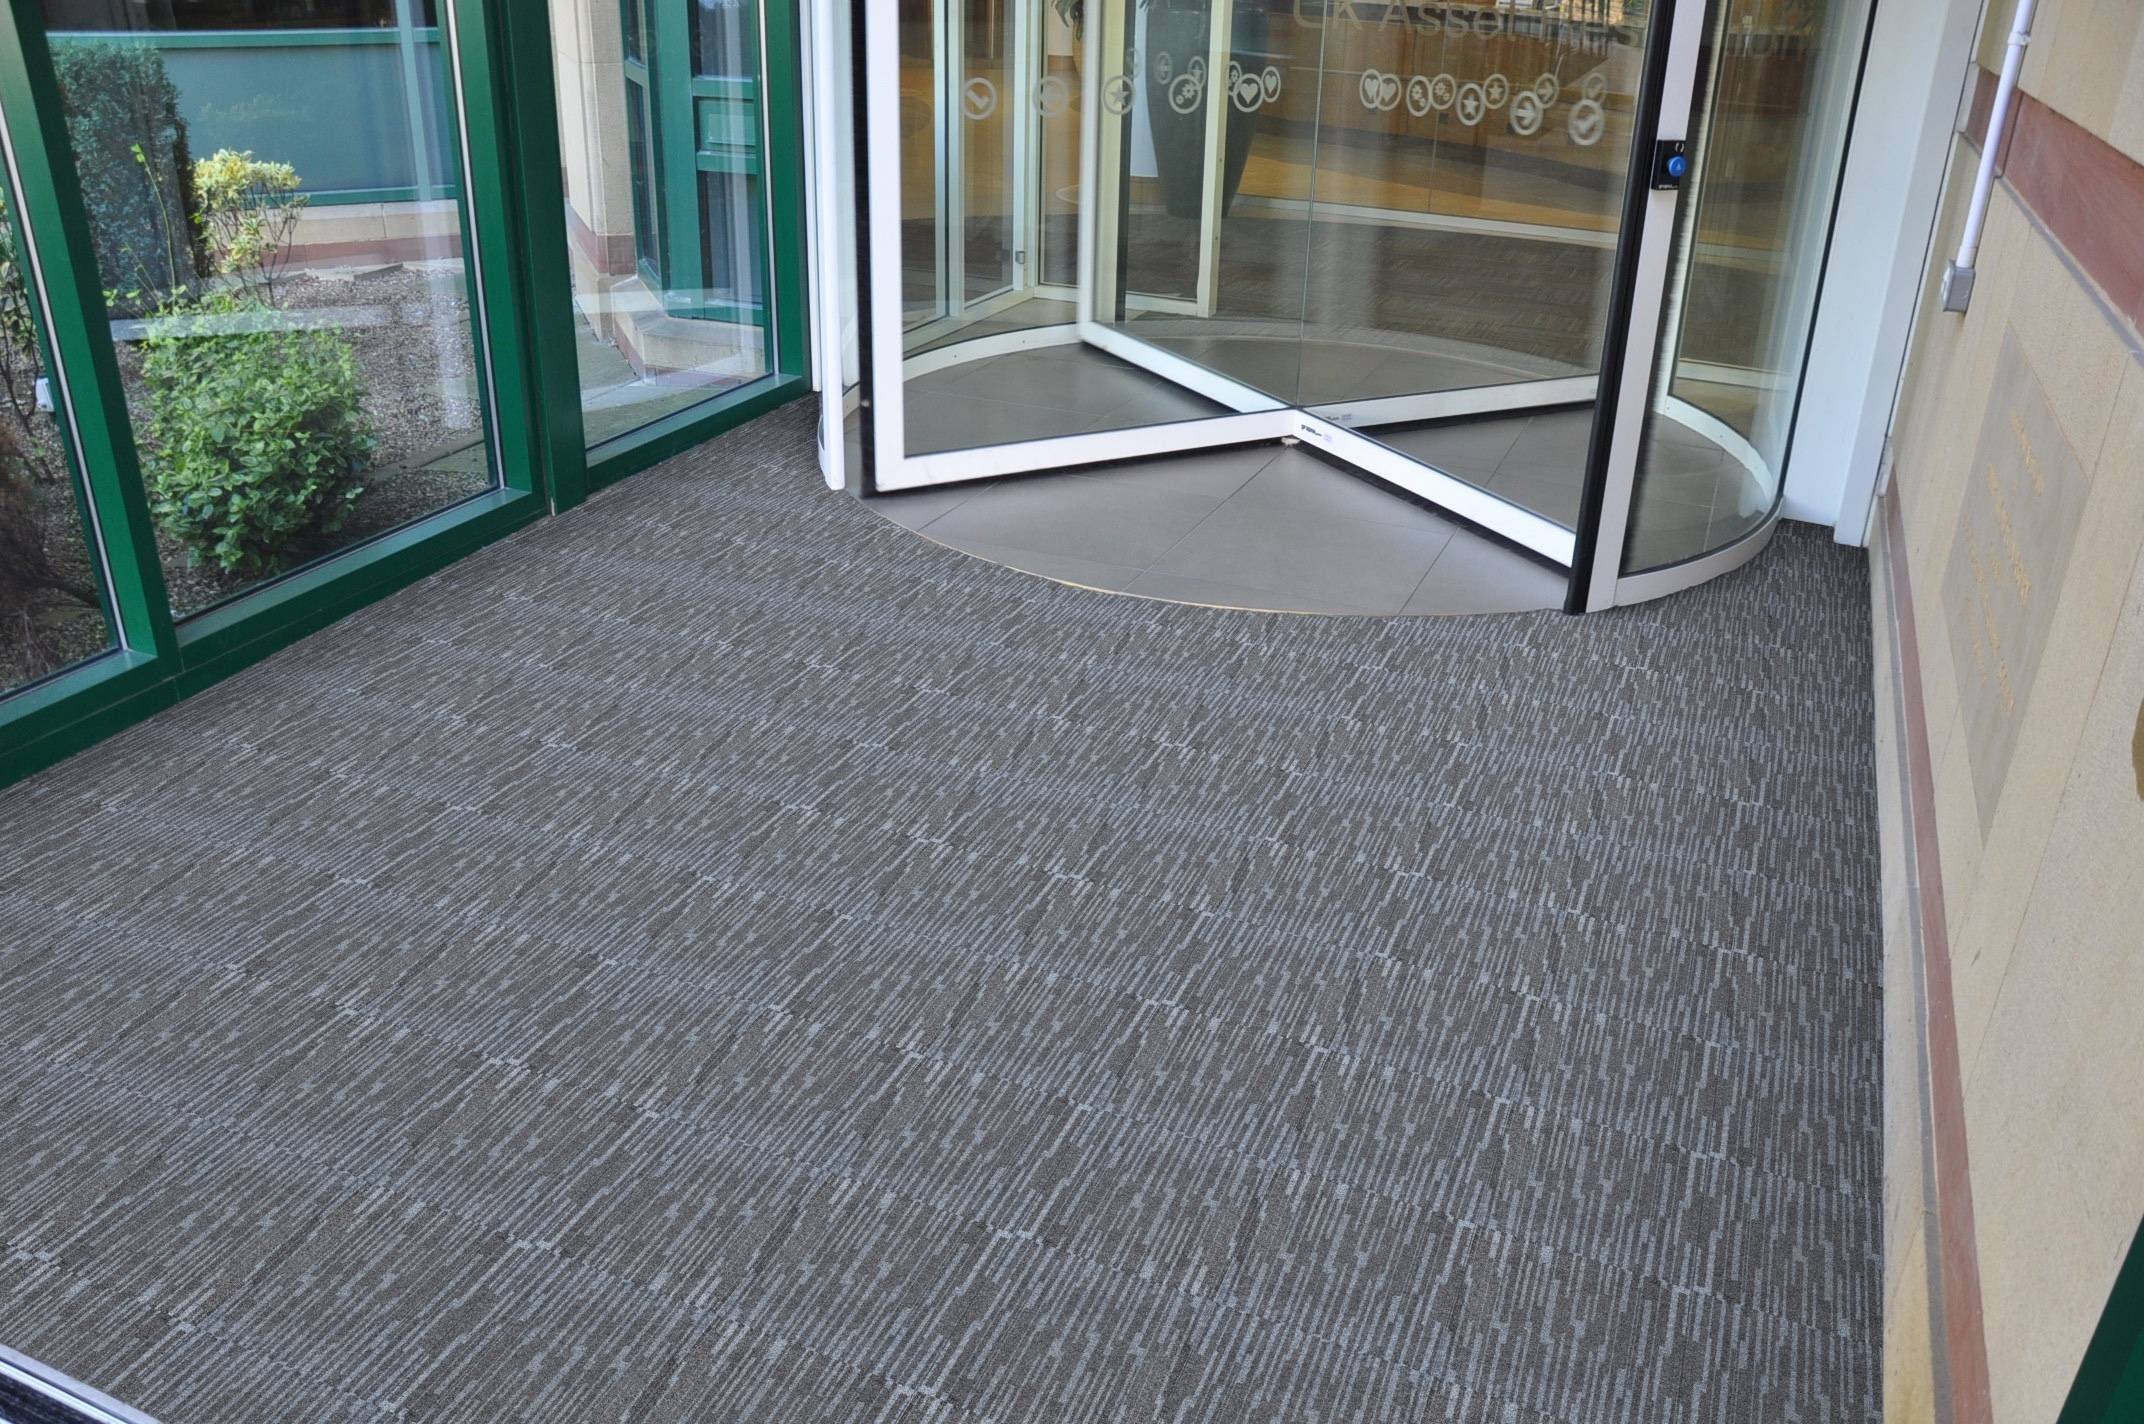 Paragon Workspace Entrance Design Carpet Design 3 Victor